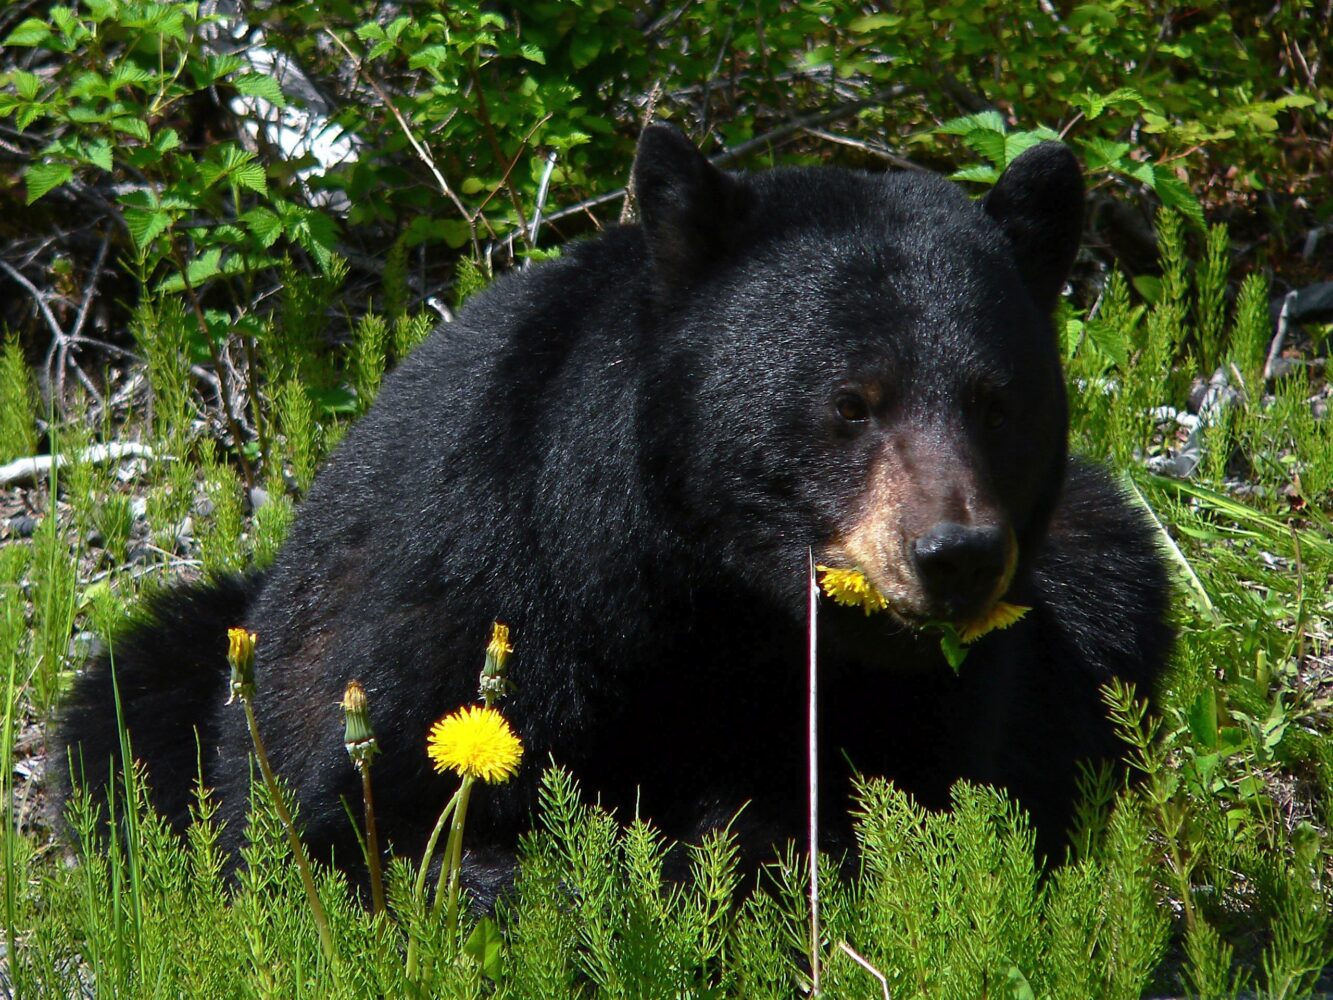 A Black Bear laying in a field eats a dandelion.